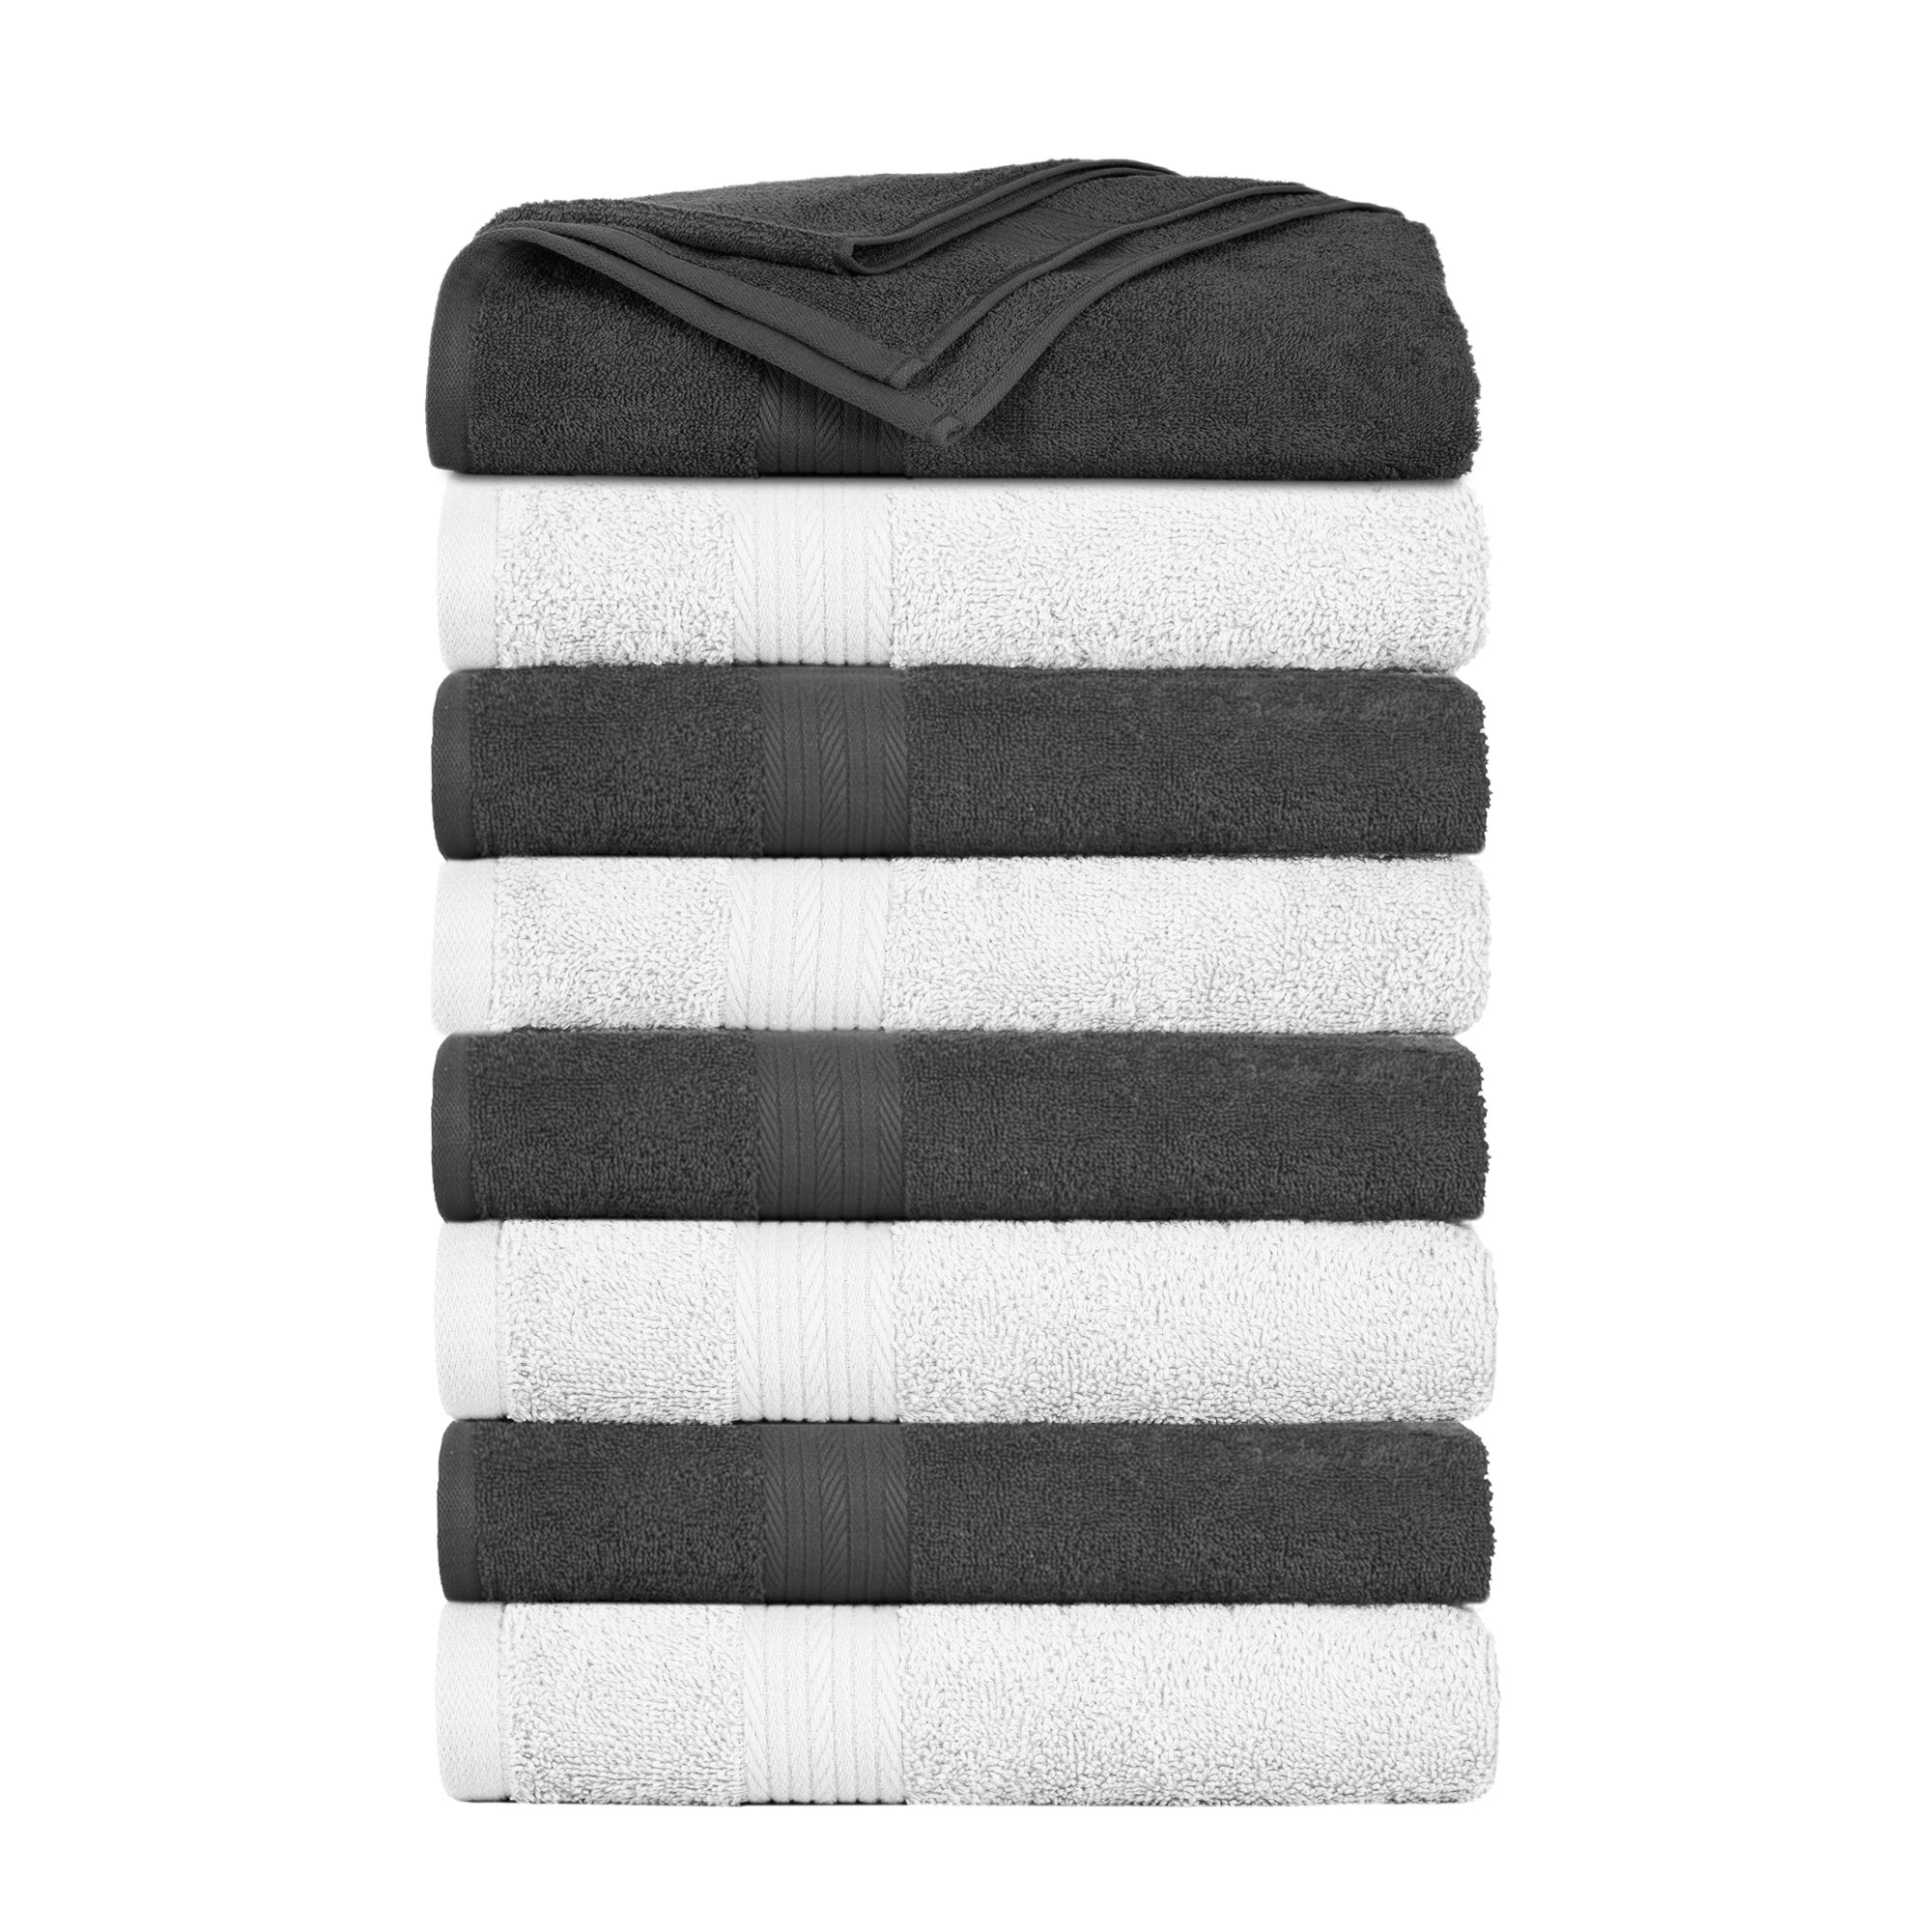 Ample Decor 100% Cotton 6 Pcs Bath Towel Set, Luxury Bath Towels